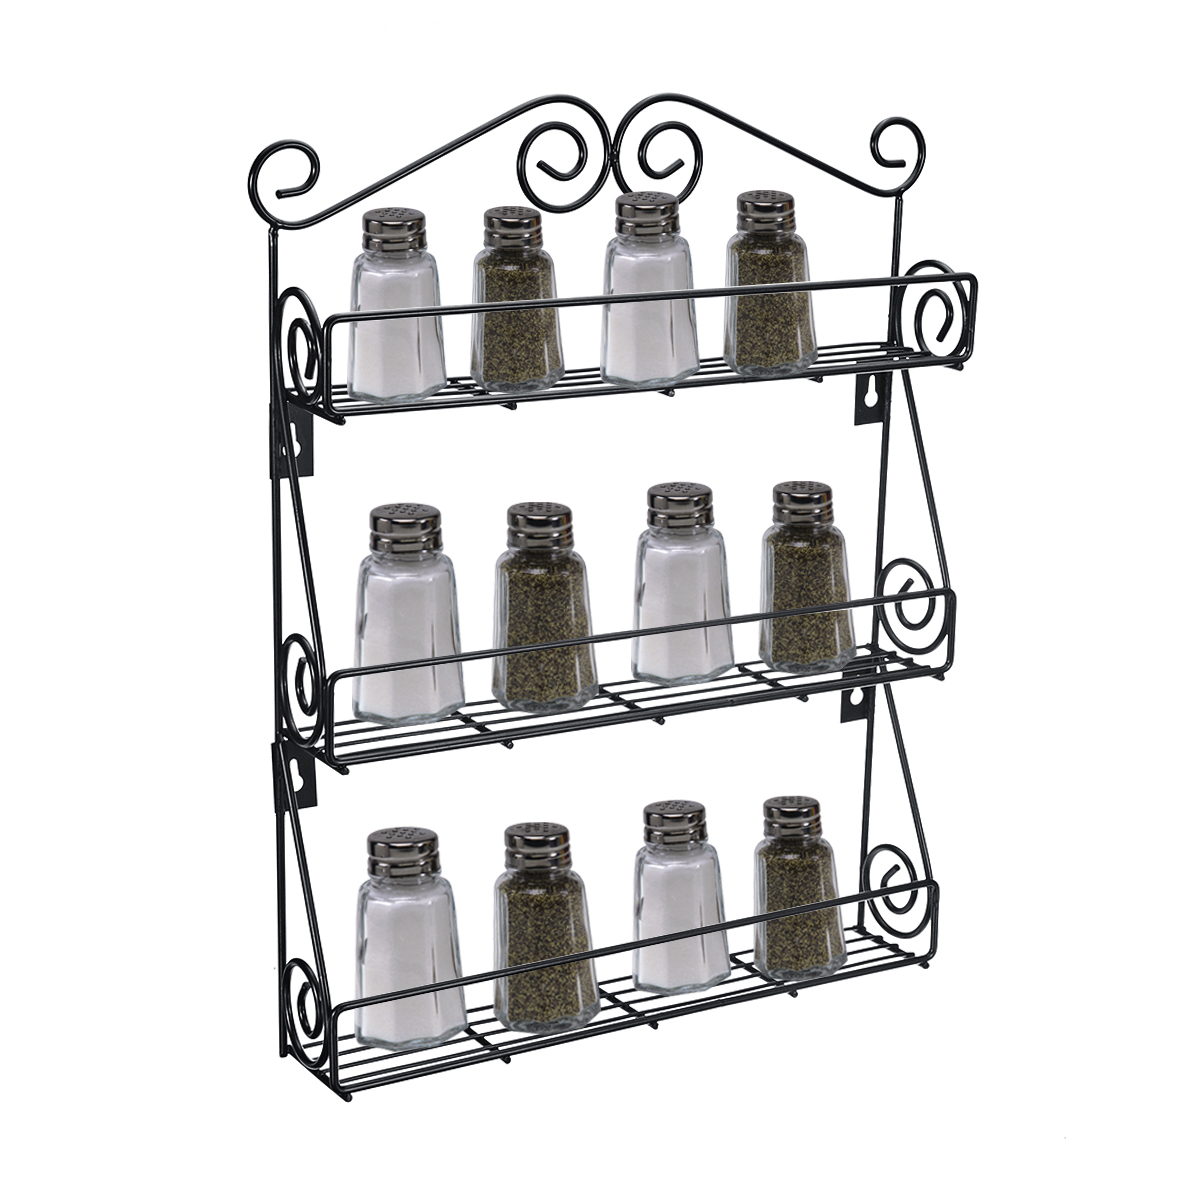 3-Tier-Kitchen-Bottle-Spice-Rack-Jar-Holder-Storage-Shelf-Organizer-Wall-Mount-1606524-2